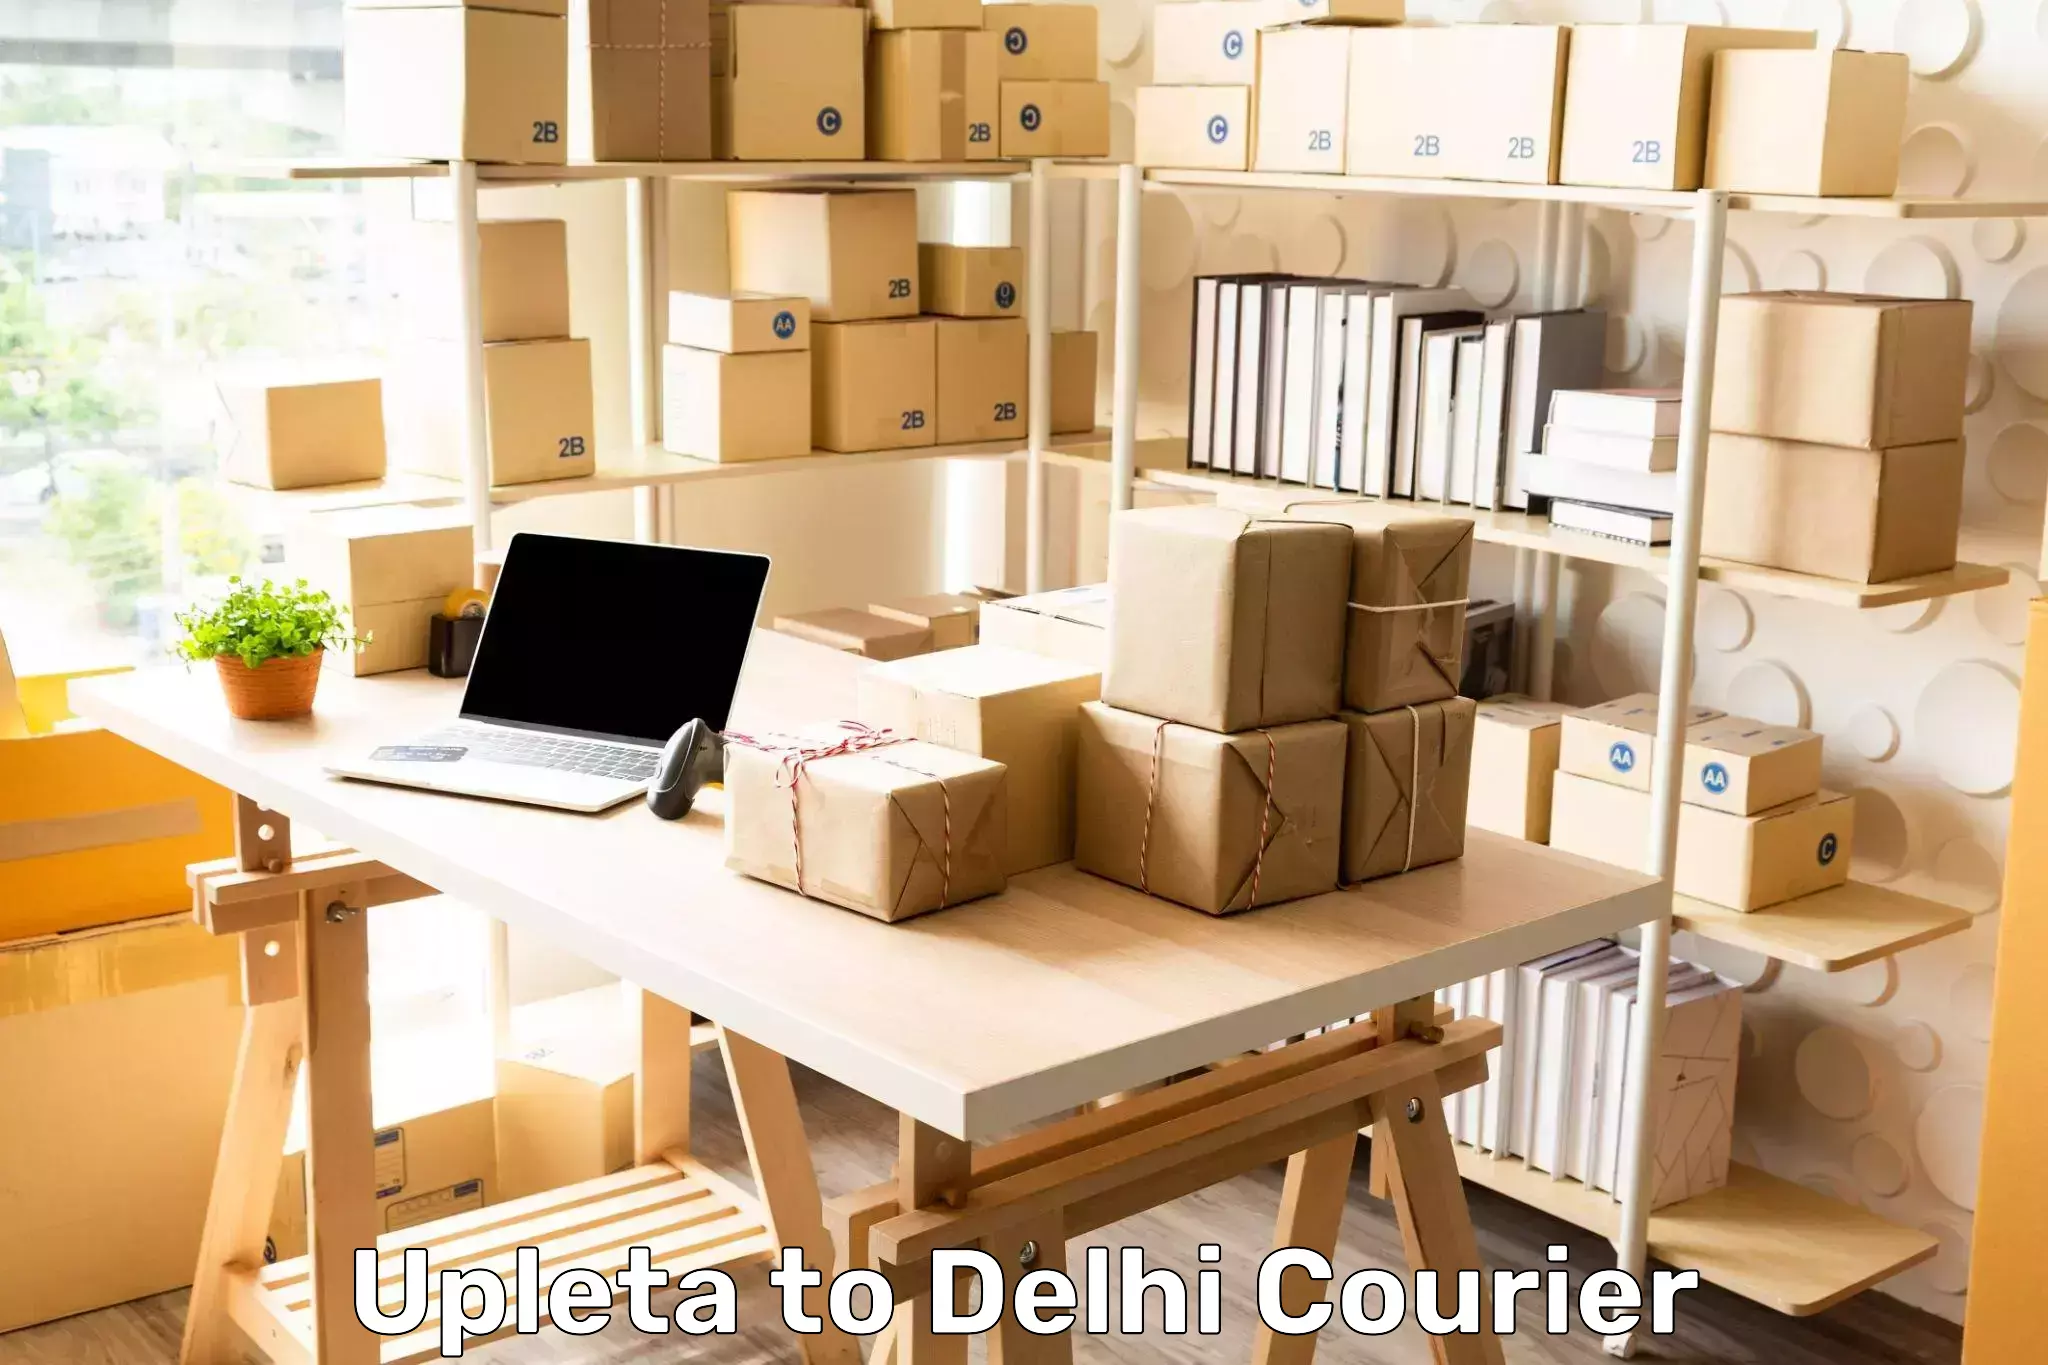 Multi-service courier options Upleta to Kalkaji